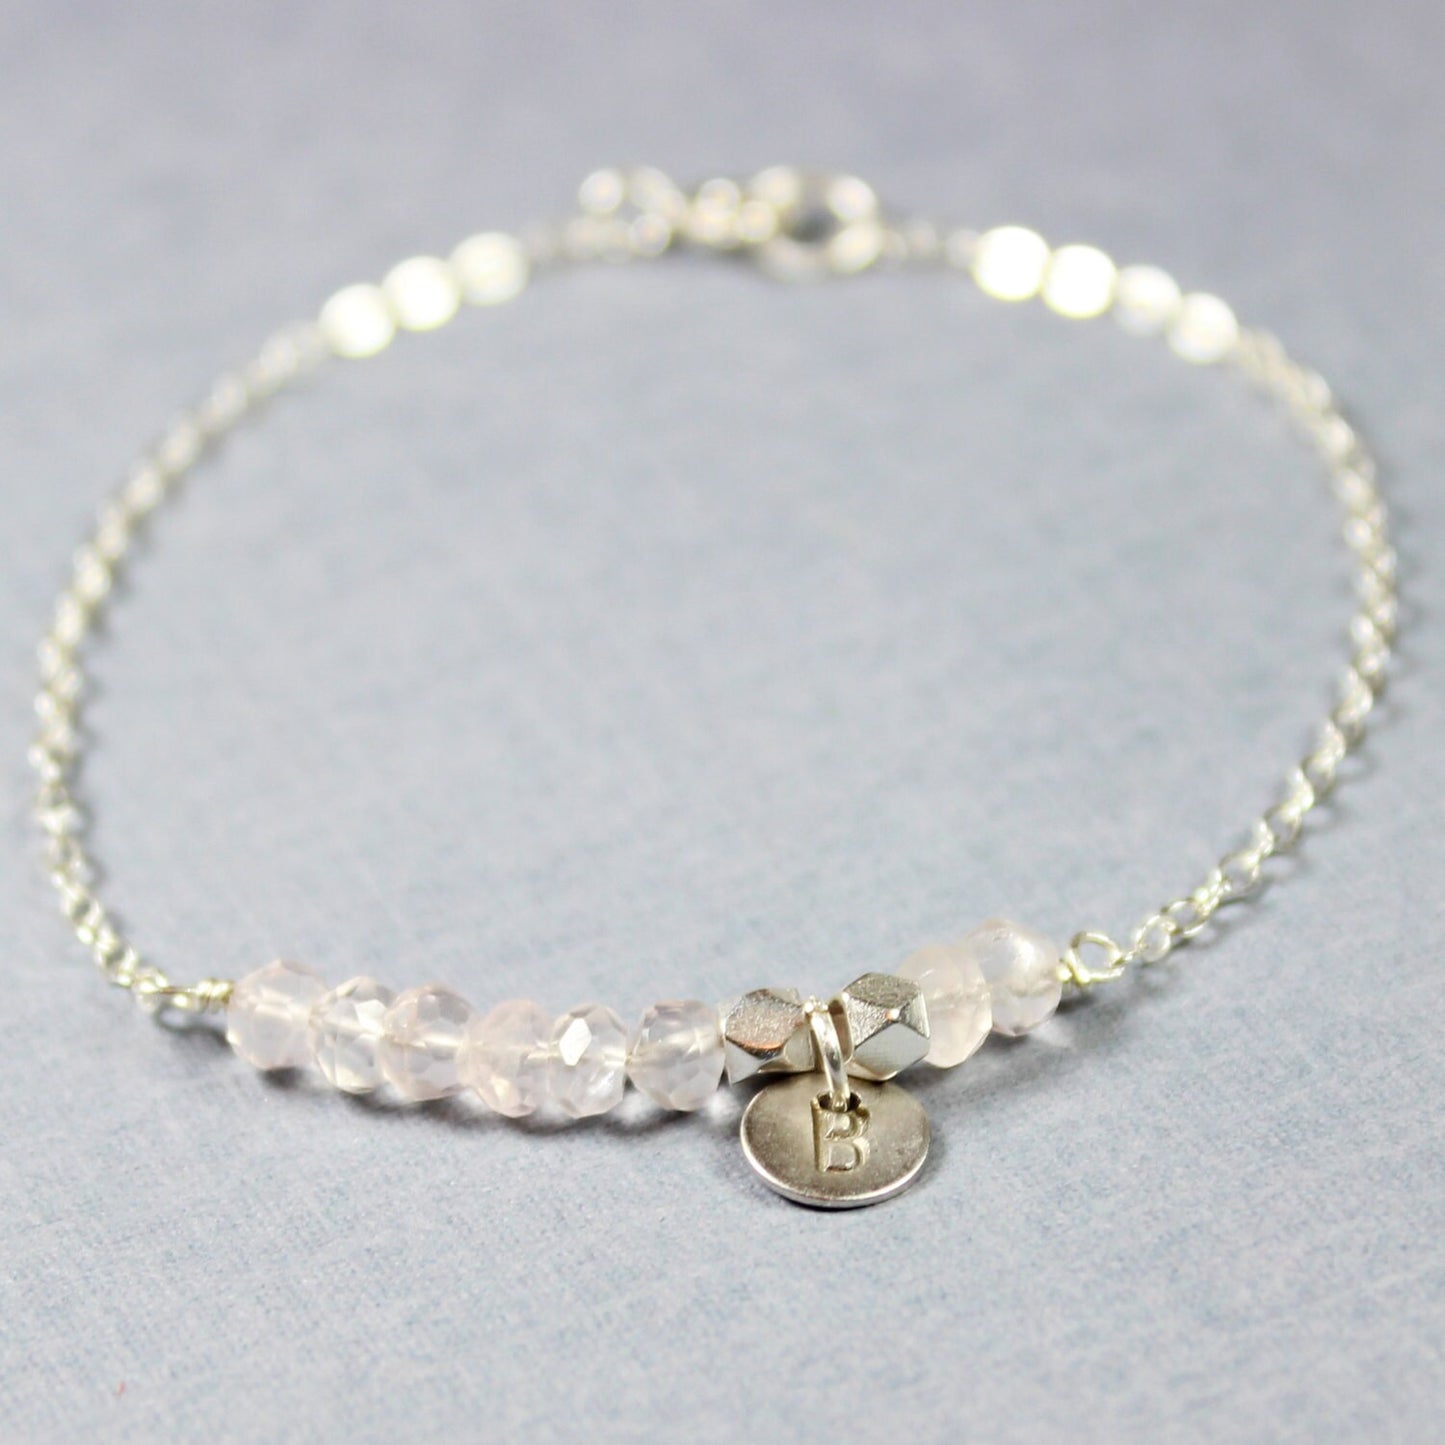 Rose Quartz and Silver Bracelet - Minimalist Jewelry - Pink and Silver Bracelet Silver Initial- Silver Letter Personalized Bracelet